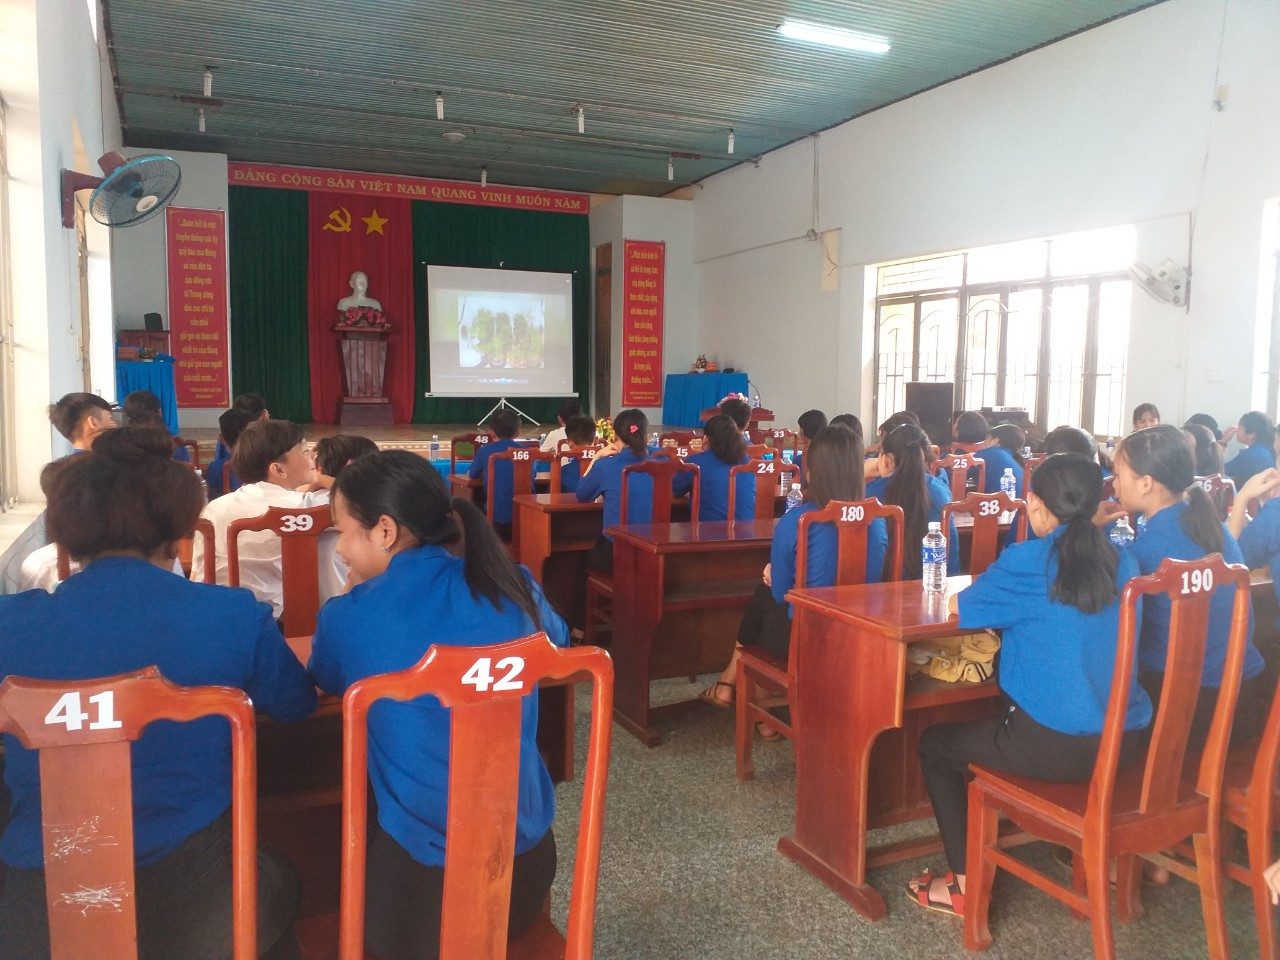 Huyện Đoàn Bù Đăng tổ chức quán triệt, tuyên truyền 2 chuyên đề học tập và làm theo tư tưởng, đạo đức, phong cách Hồ Chí Minh năm 2020